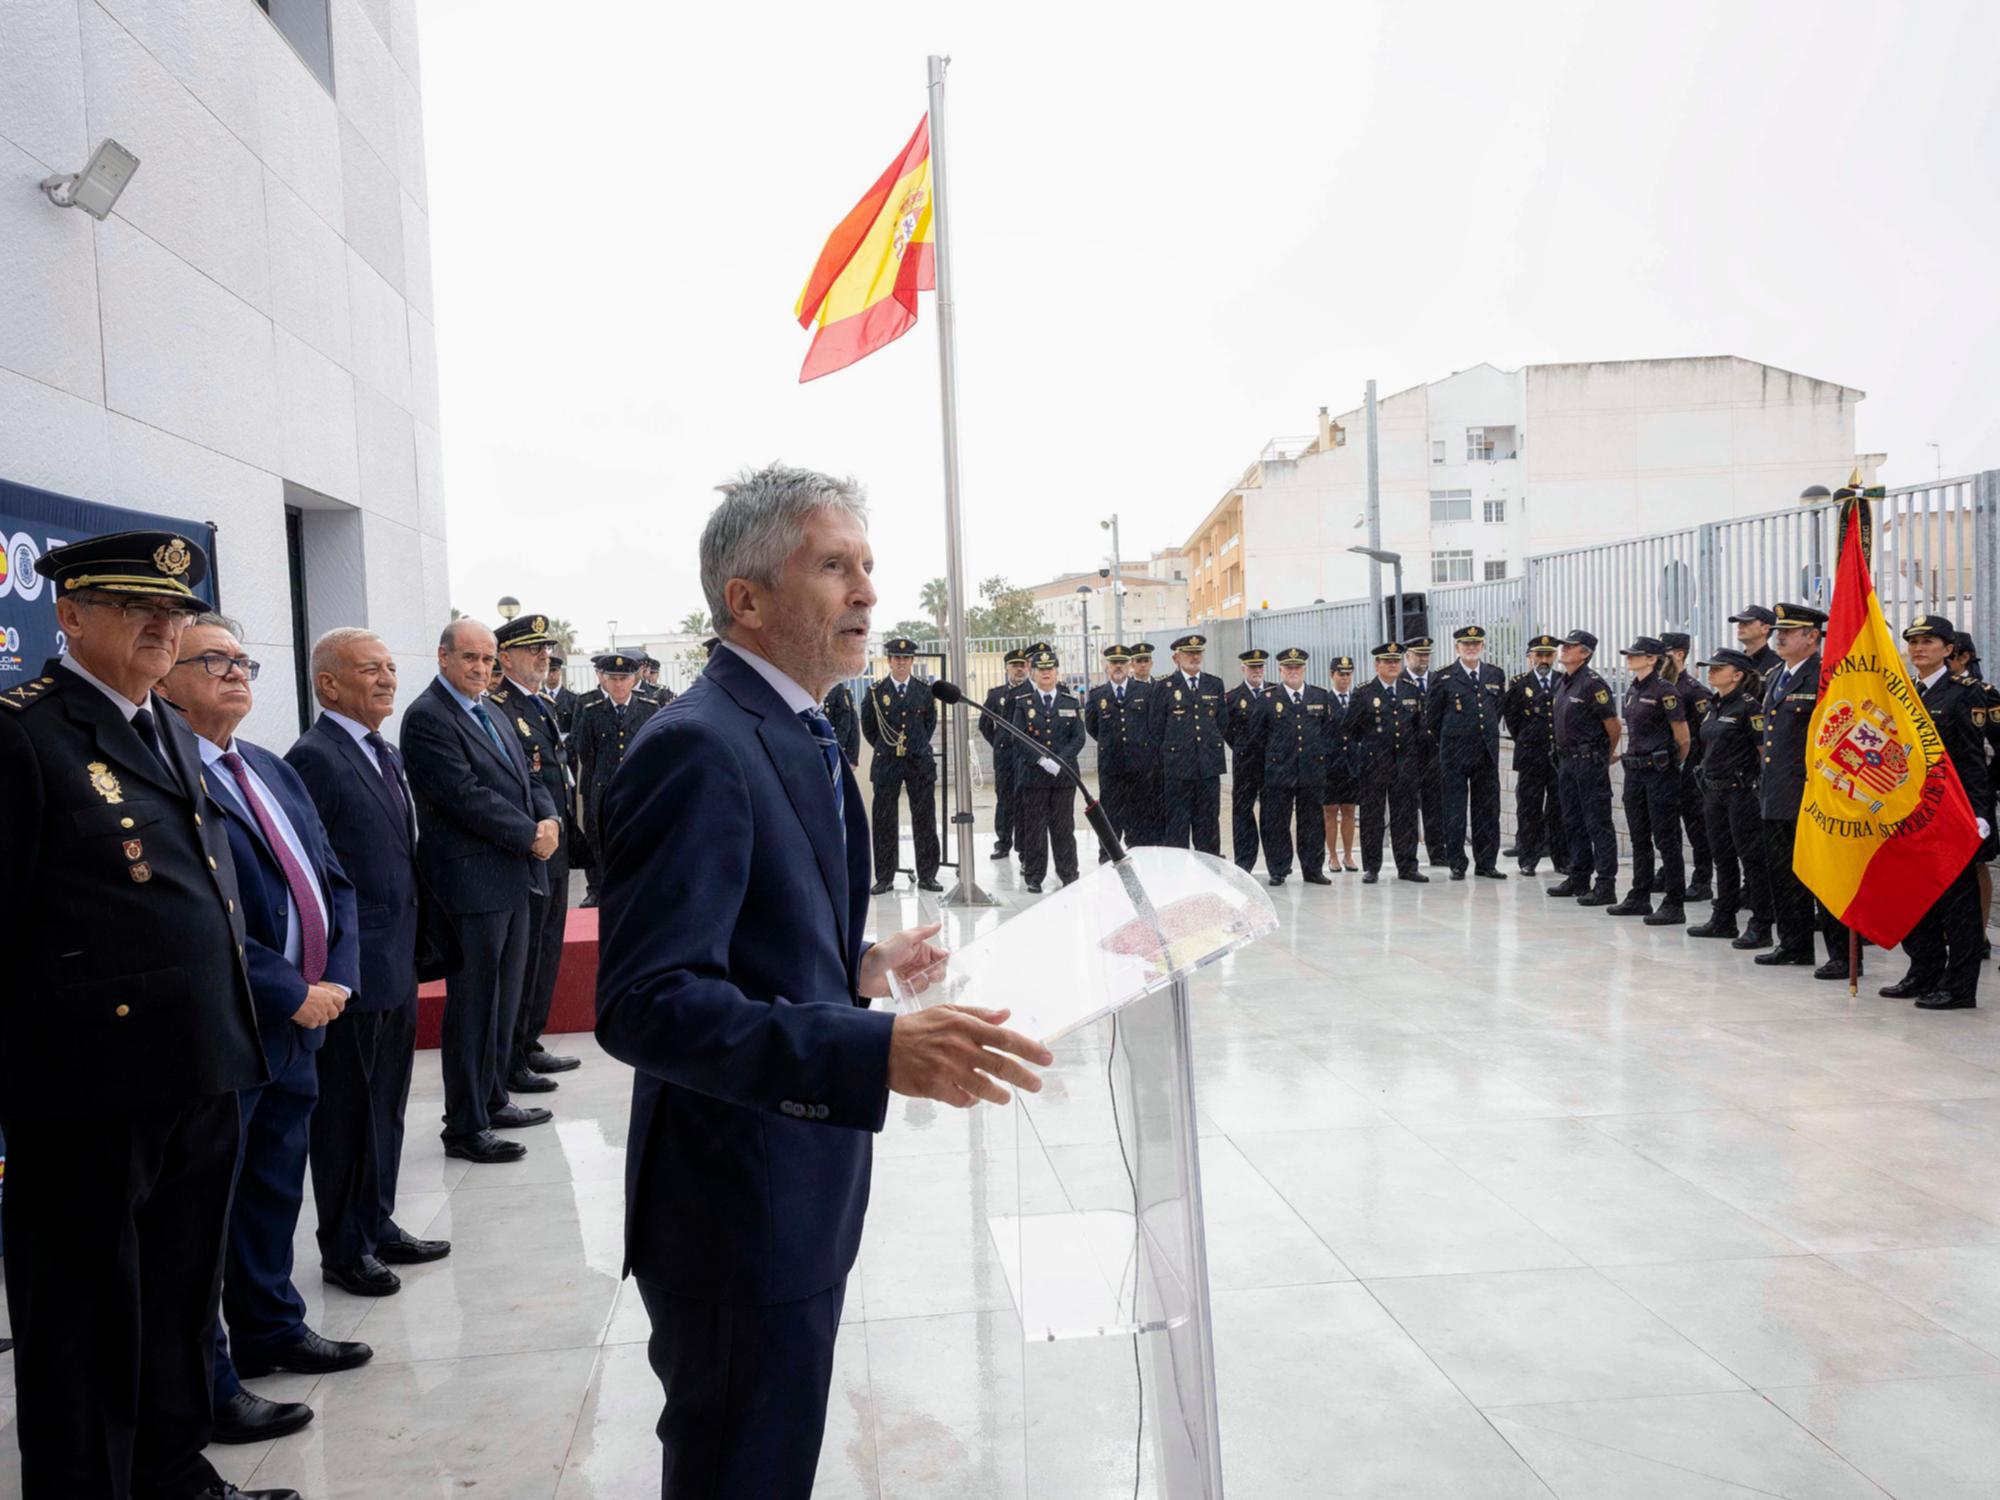 El Ministro del Interior, en funciones, Grande-Marlaska, inaugura la comisaria de Almendralejo (Badajoz)